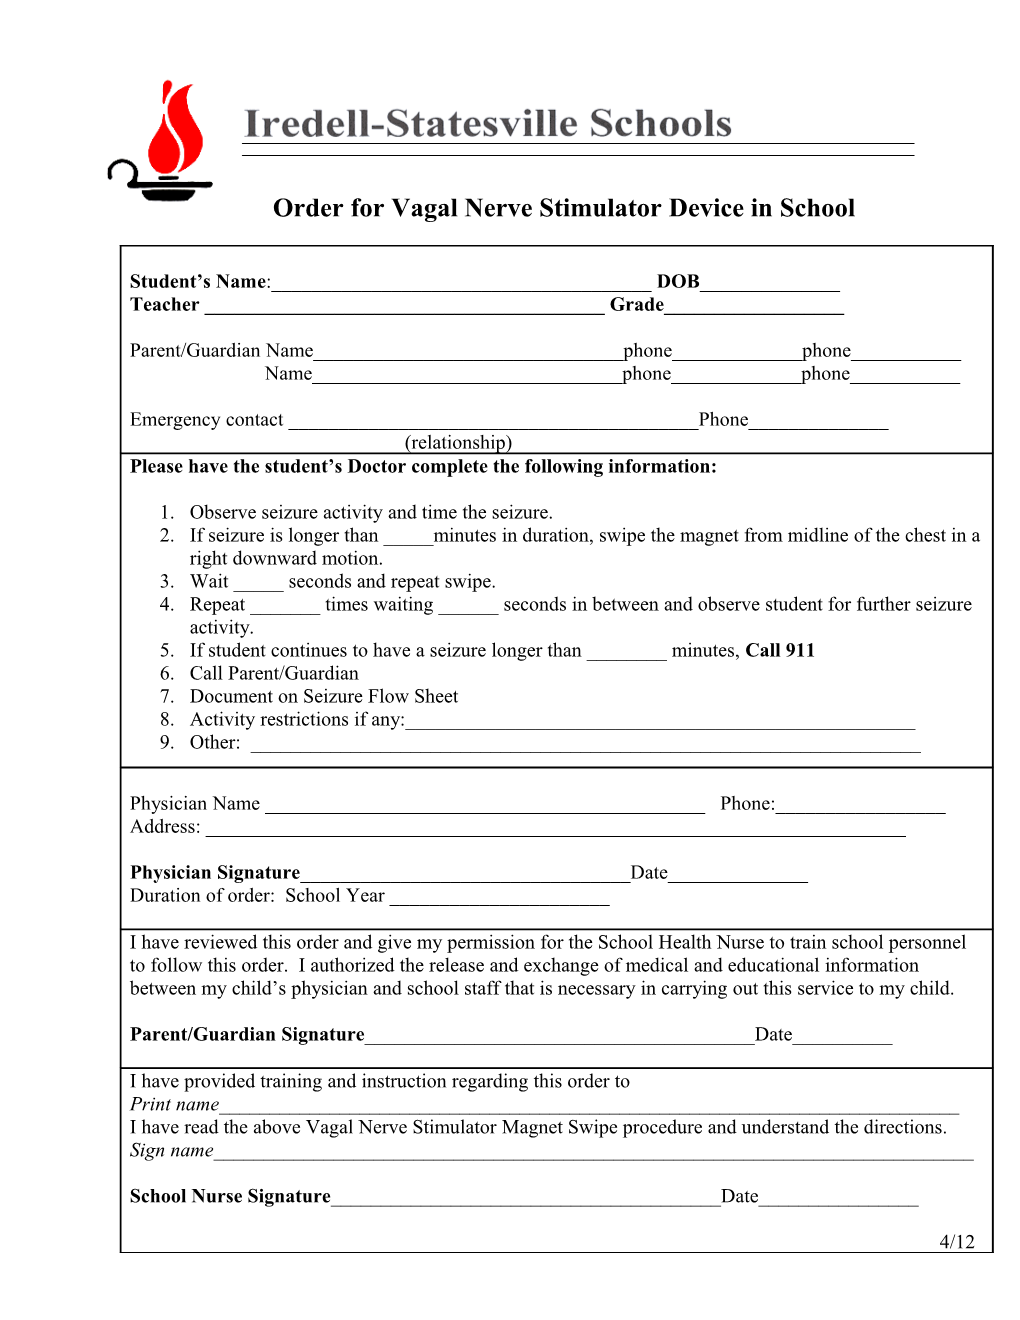 Order for Vagal Nerve Stimulator Device in School